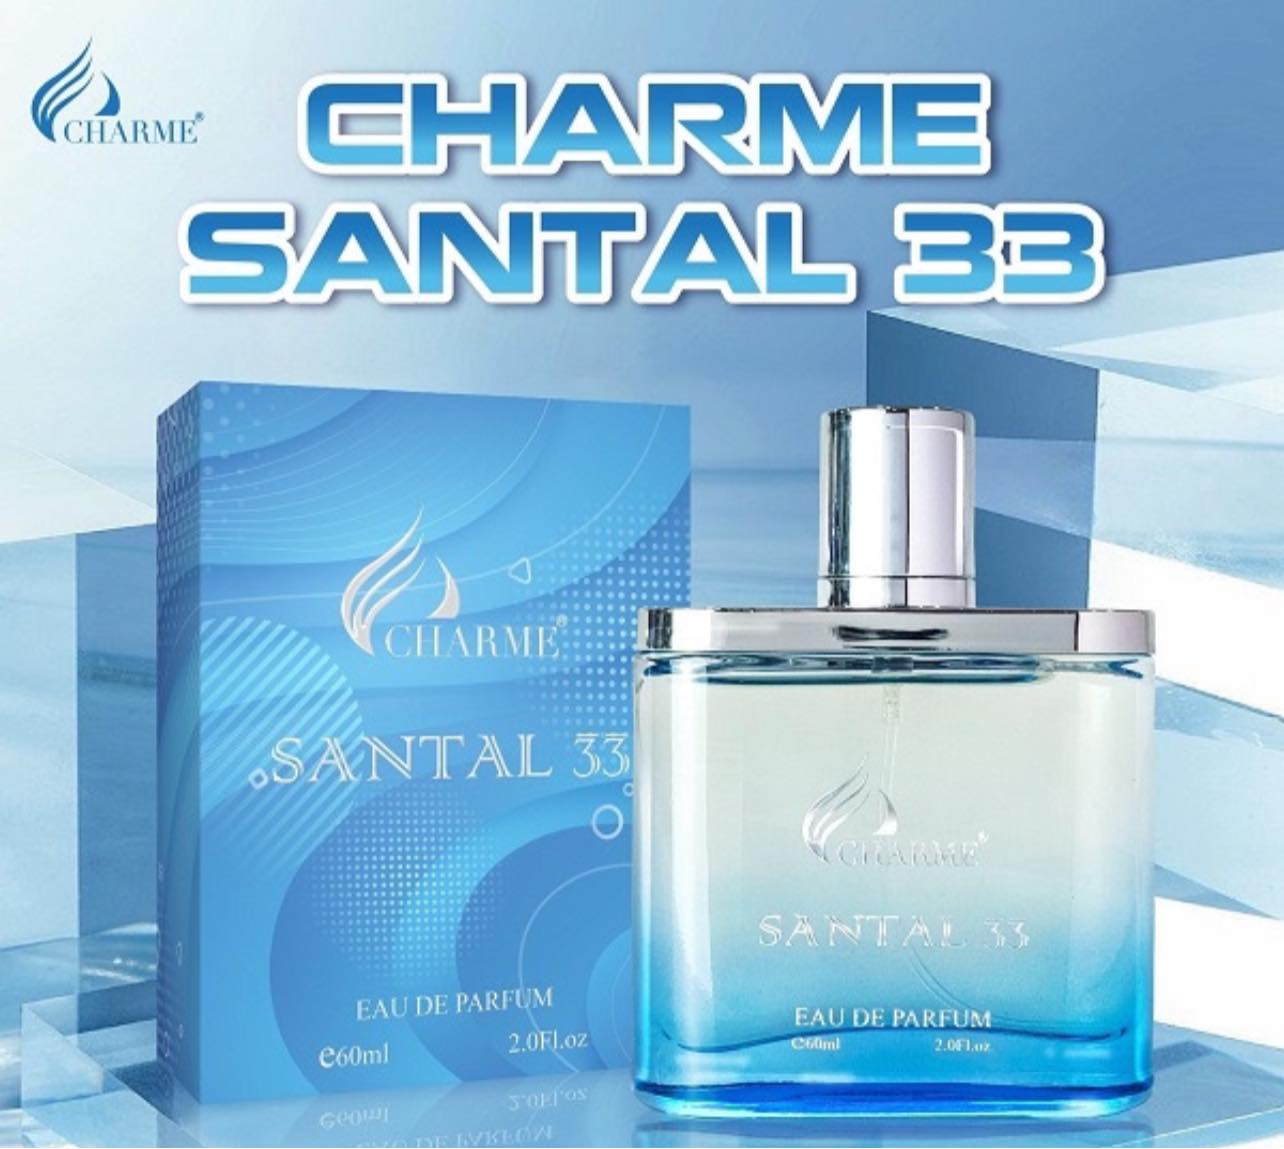 Charme Santal 33 nốt hương đầy cá tính và khác biệt